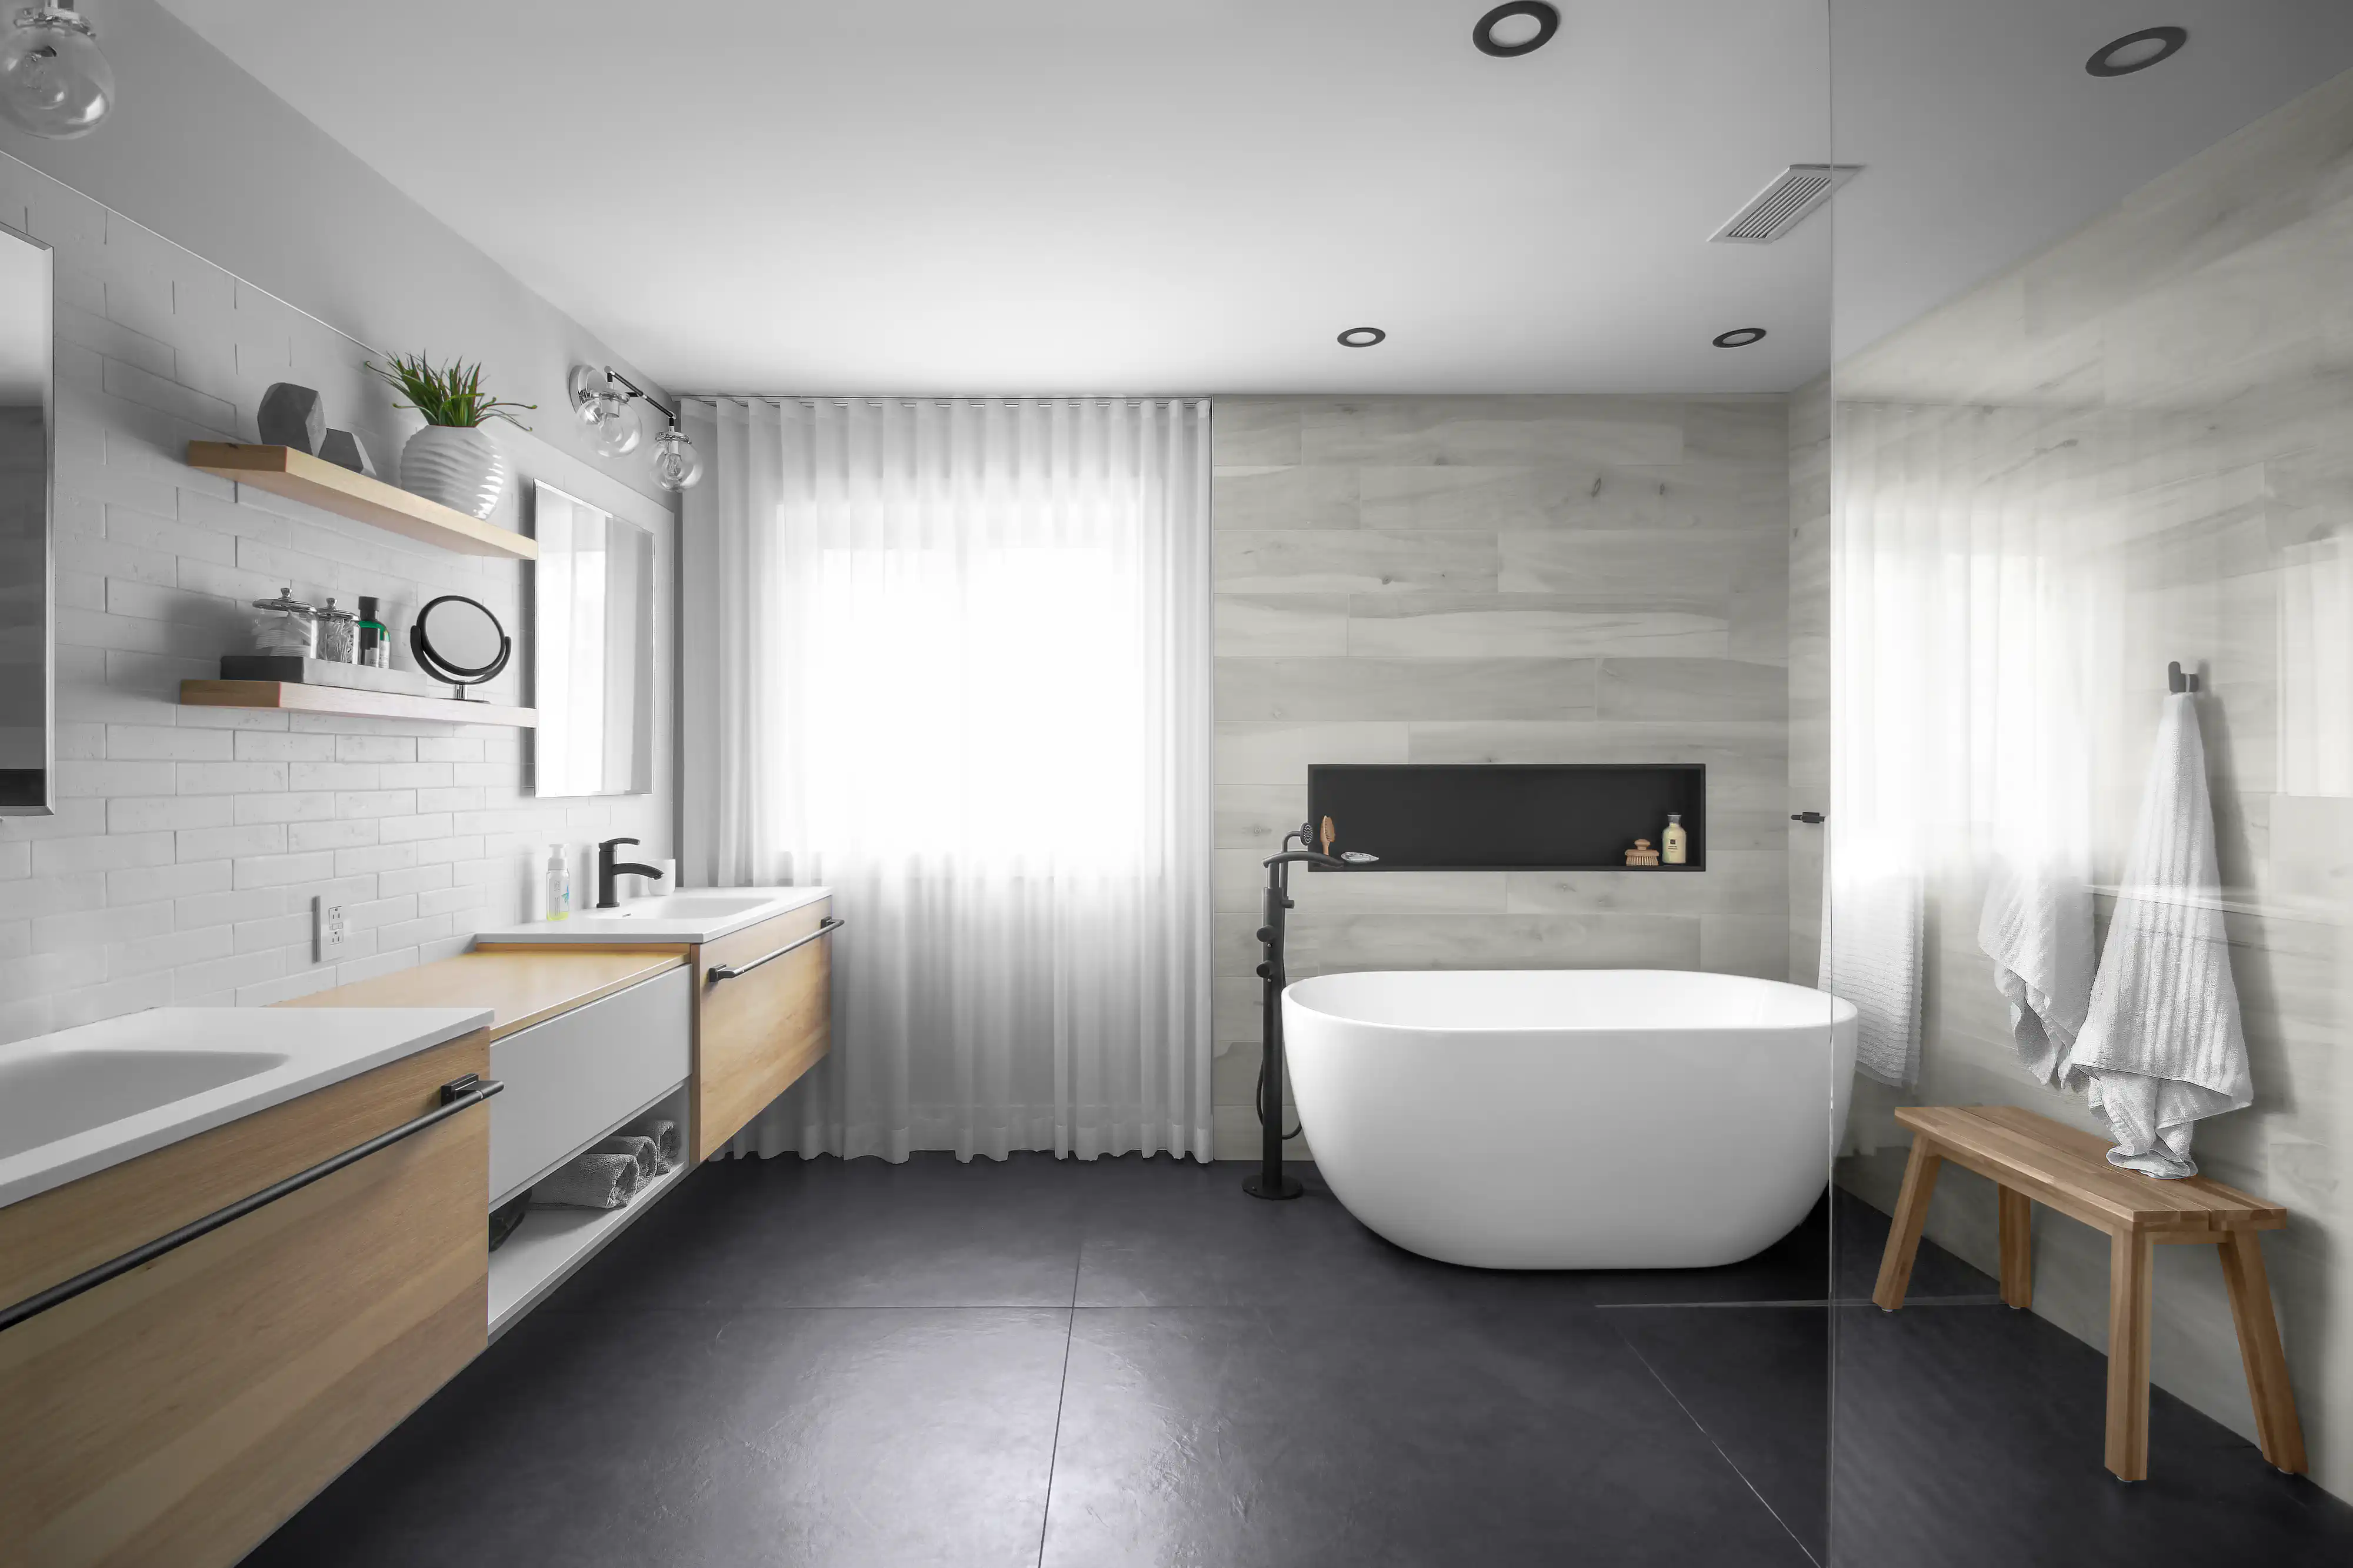 Salle de bain moderne avec une baignoire autoportante blanche, un lavabo sur comptoir en bois et une douche vitrée avec des carreaux noirs, intérieur signé Sarah Brown Design